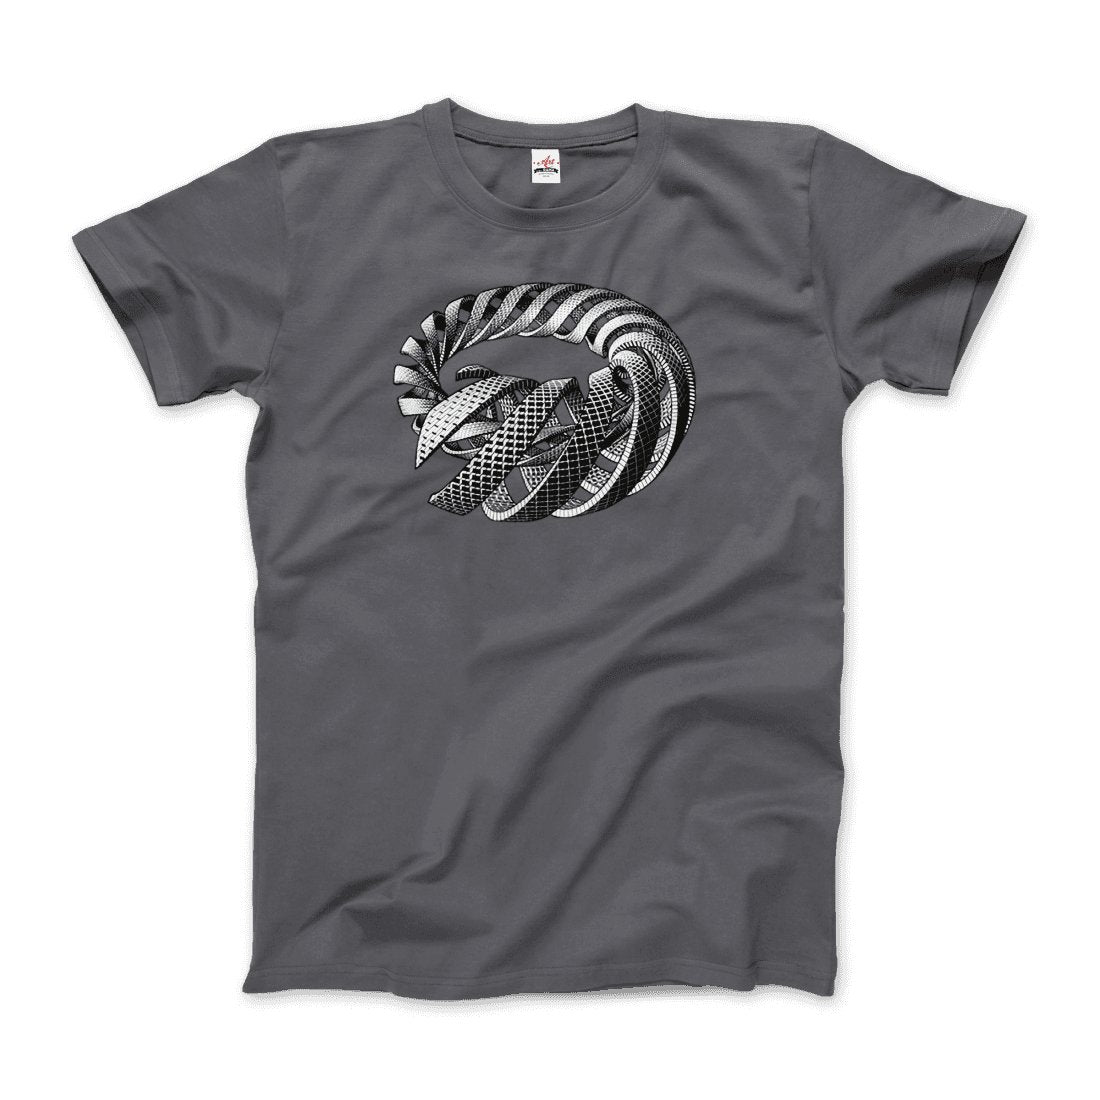 MC Escher Spirals Art T-Shirt - KME means the very best